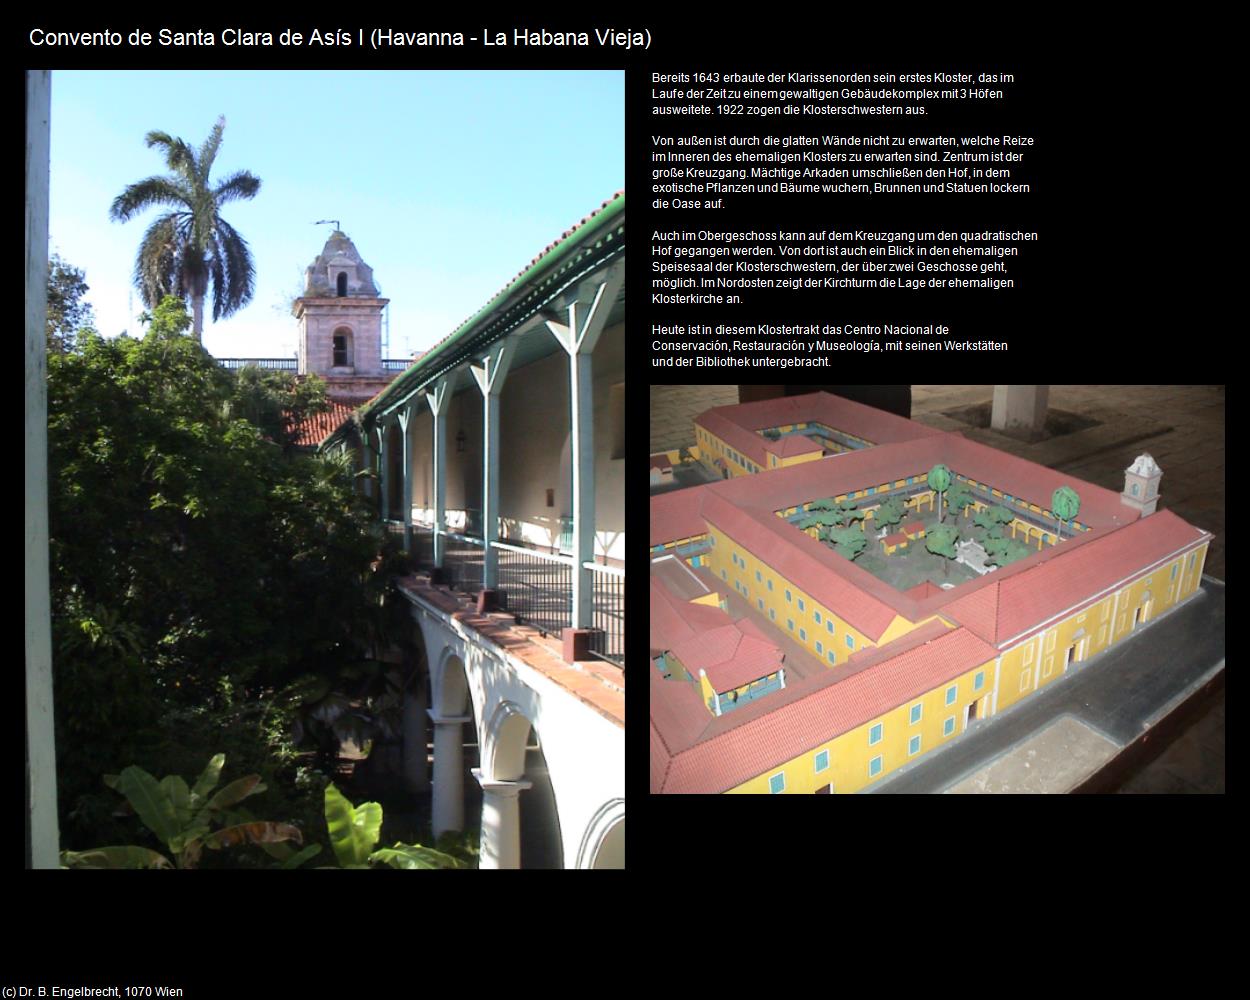 Convento de Santa Clara de Asís I (Havanna/La Habana) in KUBA